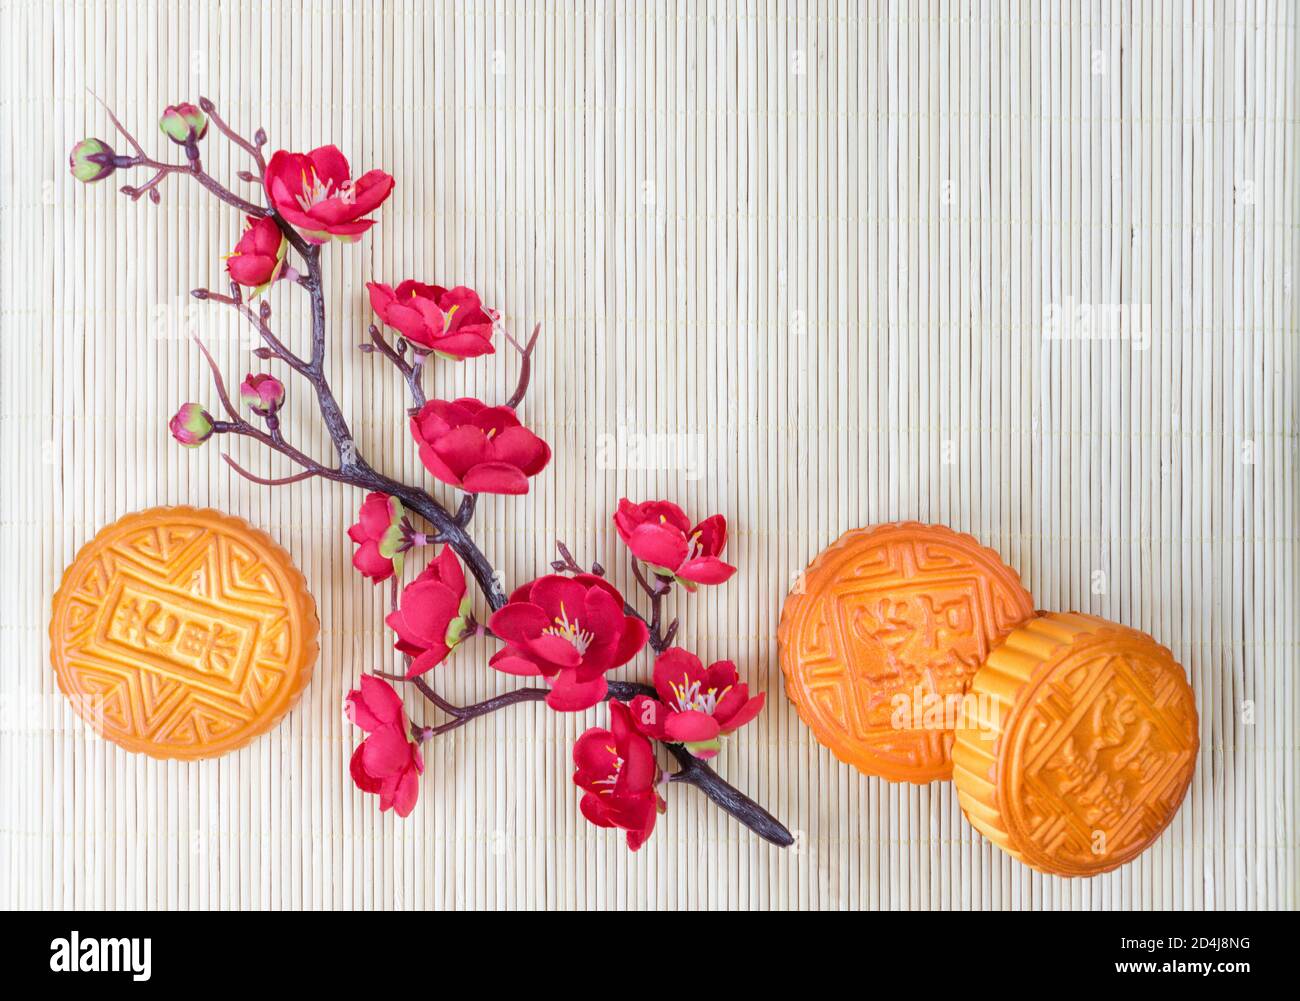 Chinesische Mitte-Herbst-Festival Zusammensetzung: Traditionelle chinesische Mondkuchen und Zweig mit roten Blumen sind auf einer Strohmatte, mit Copy-Space Stockfoto